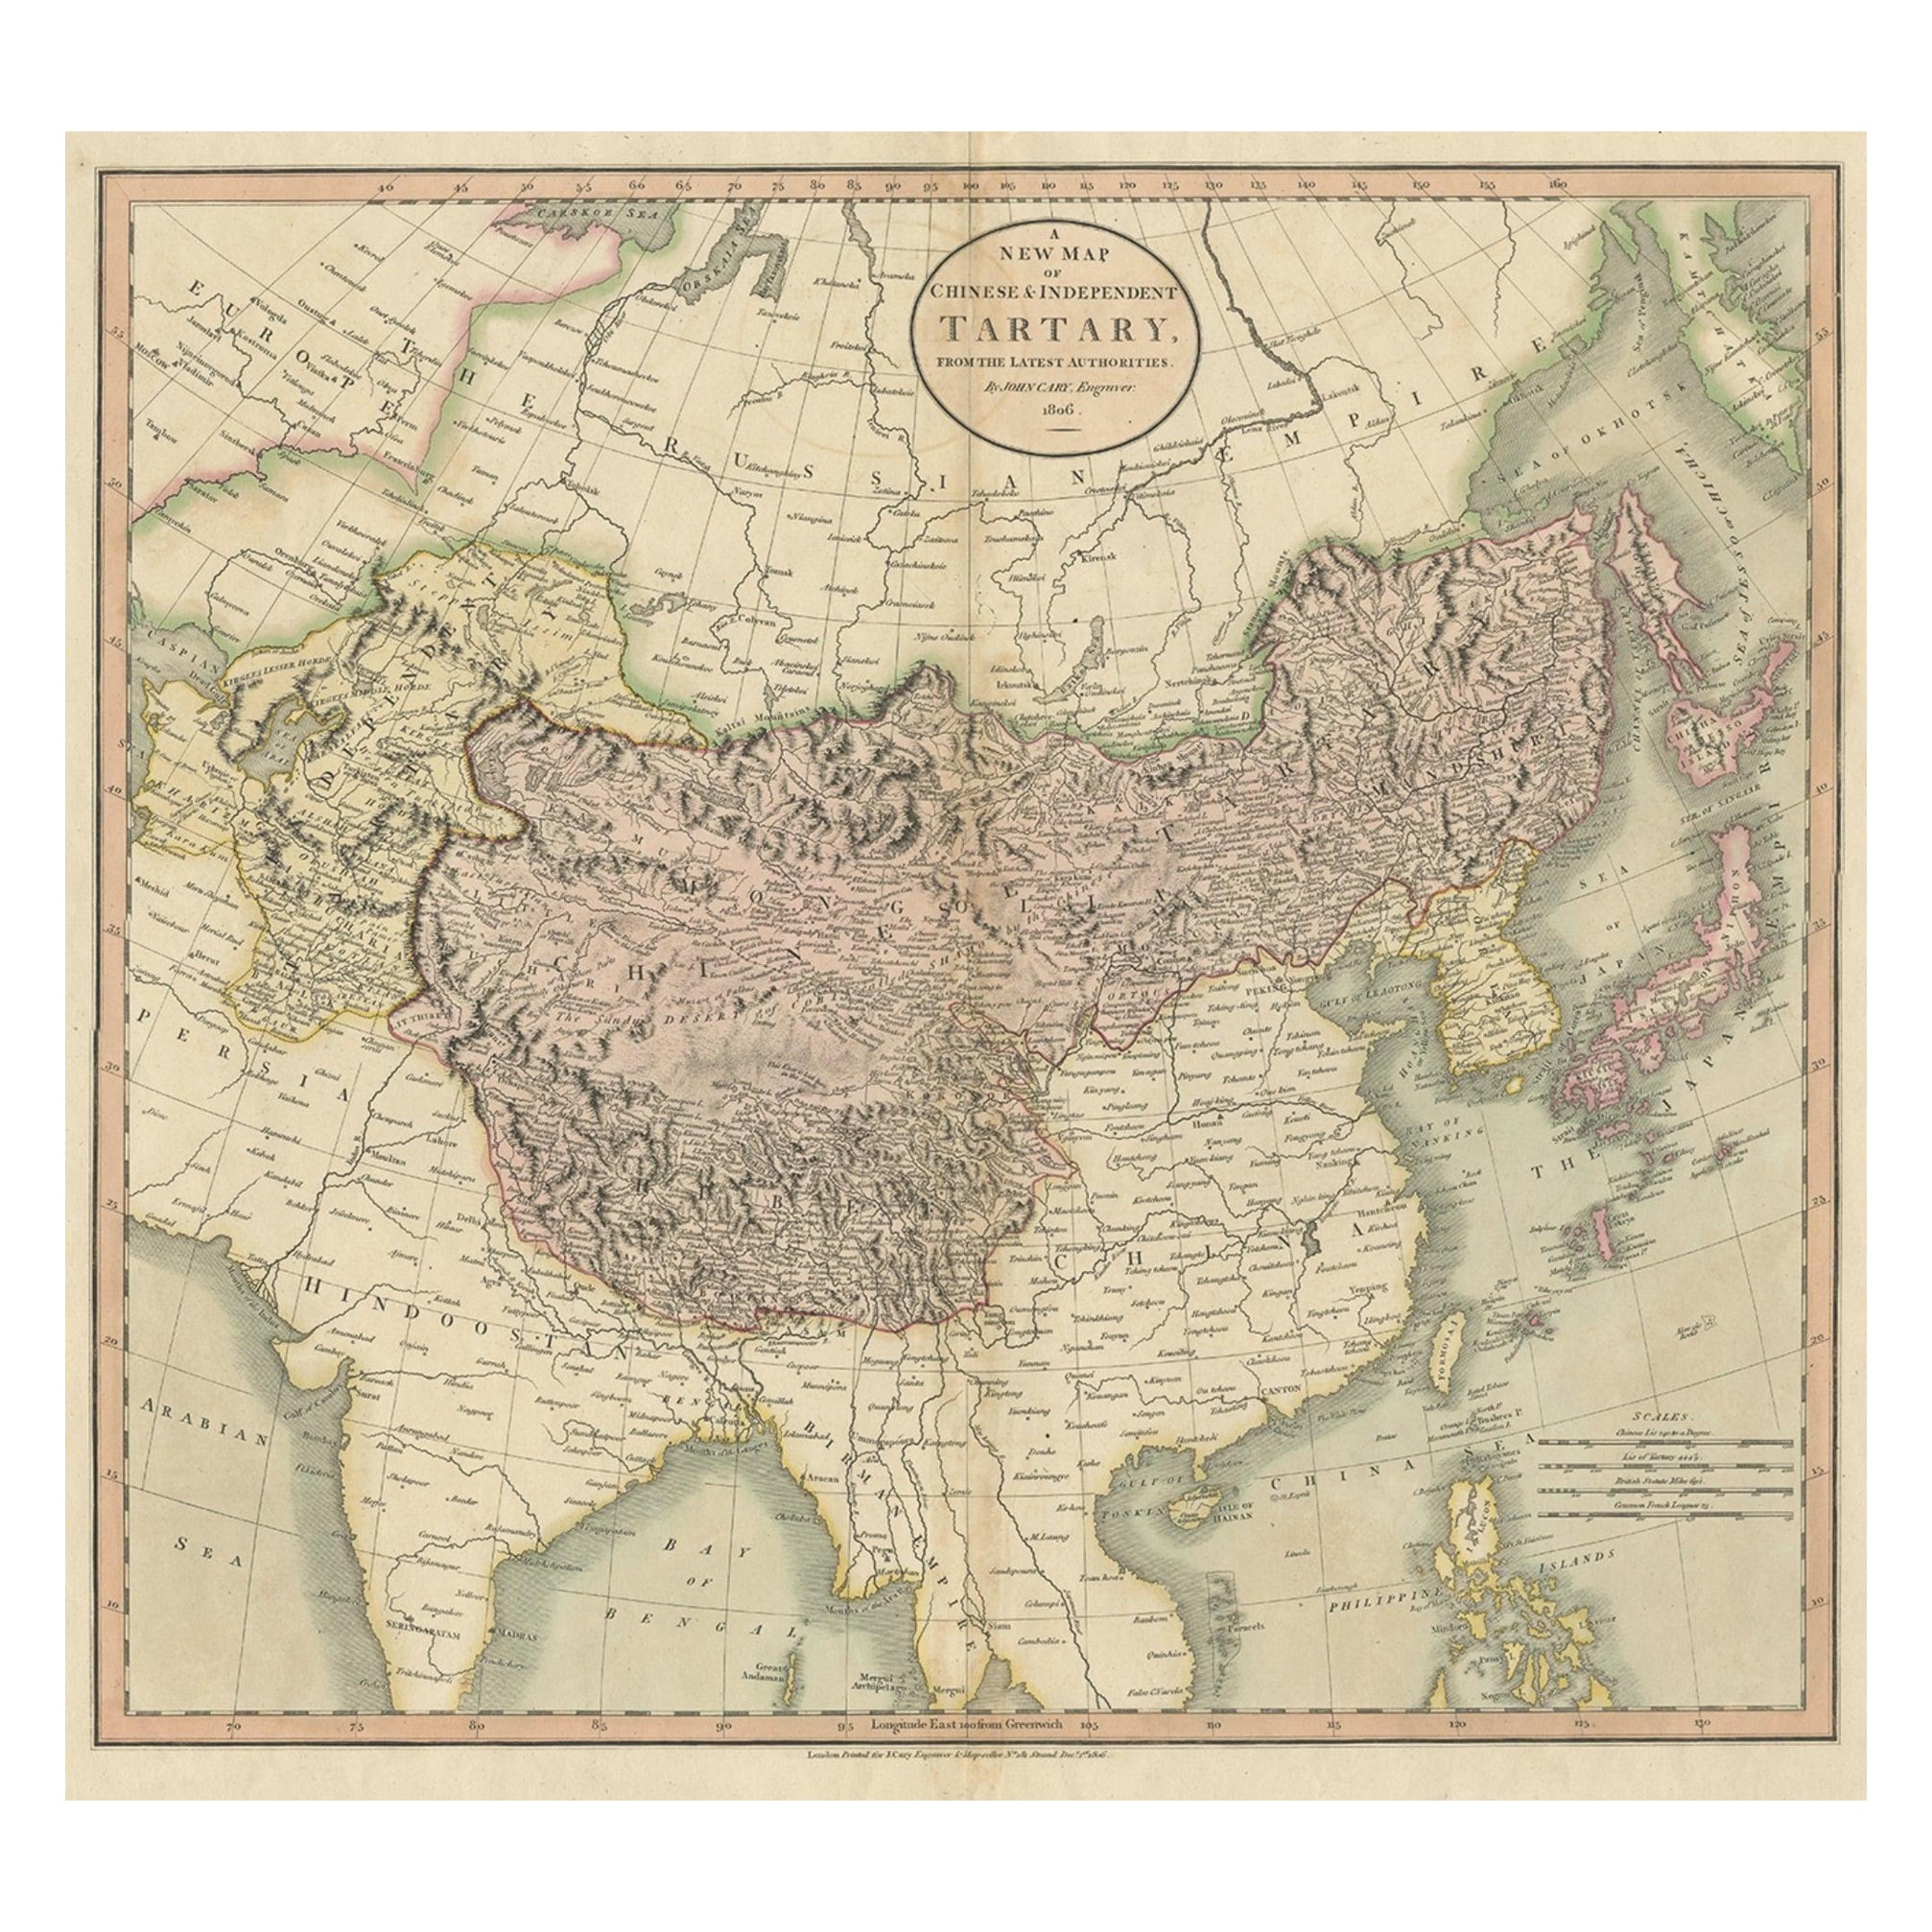 Antike Karte der chinesischen und unabhängigen Tartary, Korea und Japan, 1806